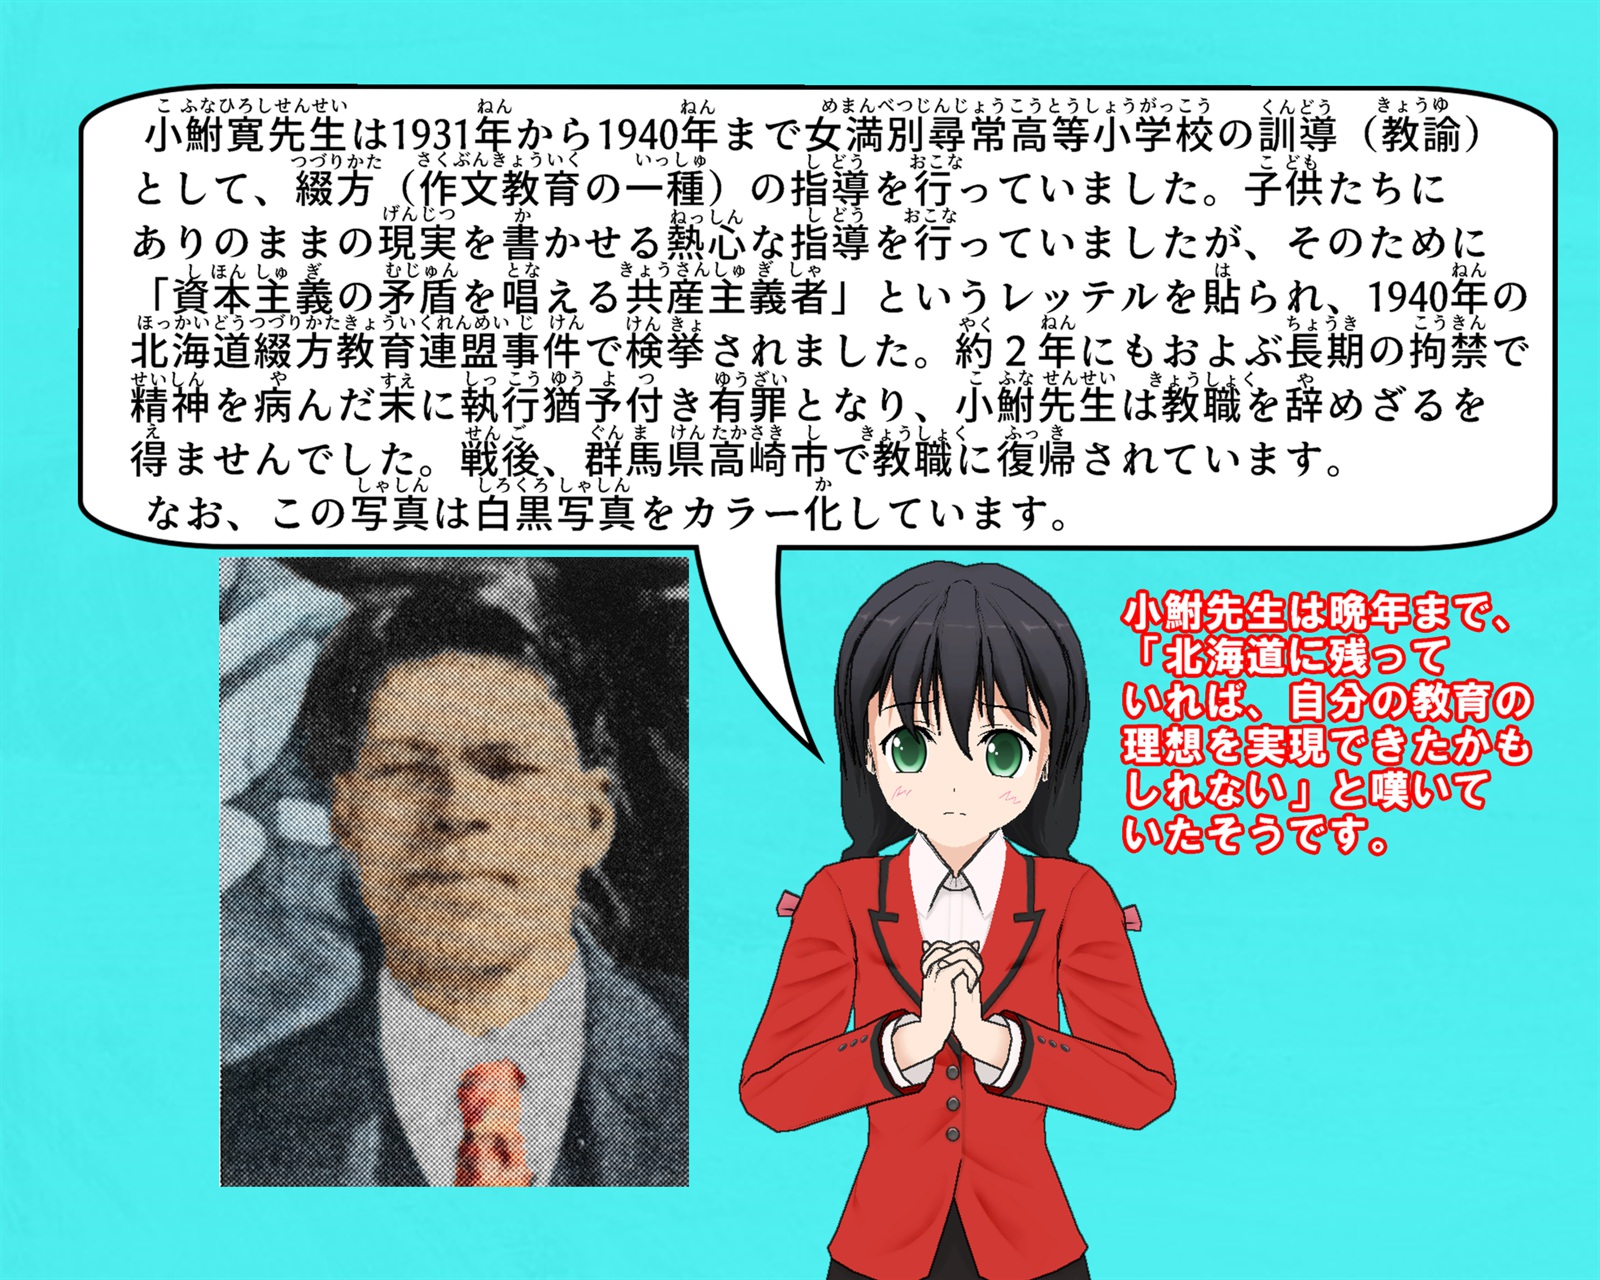 小鮒寛先生の写真と北海道綴り方教育連盟事件について説明をしているイラスト